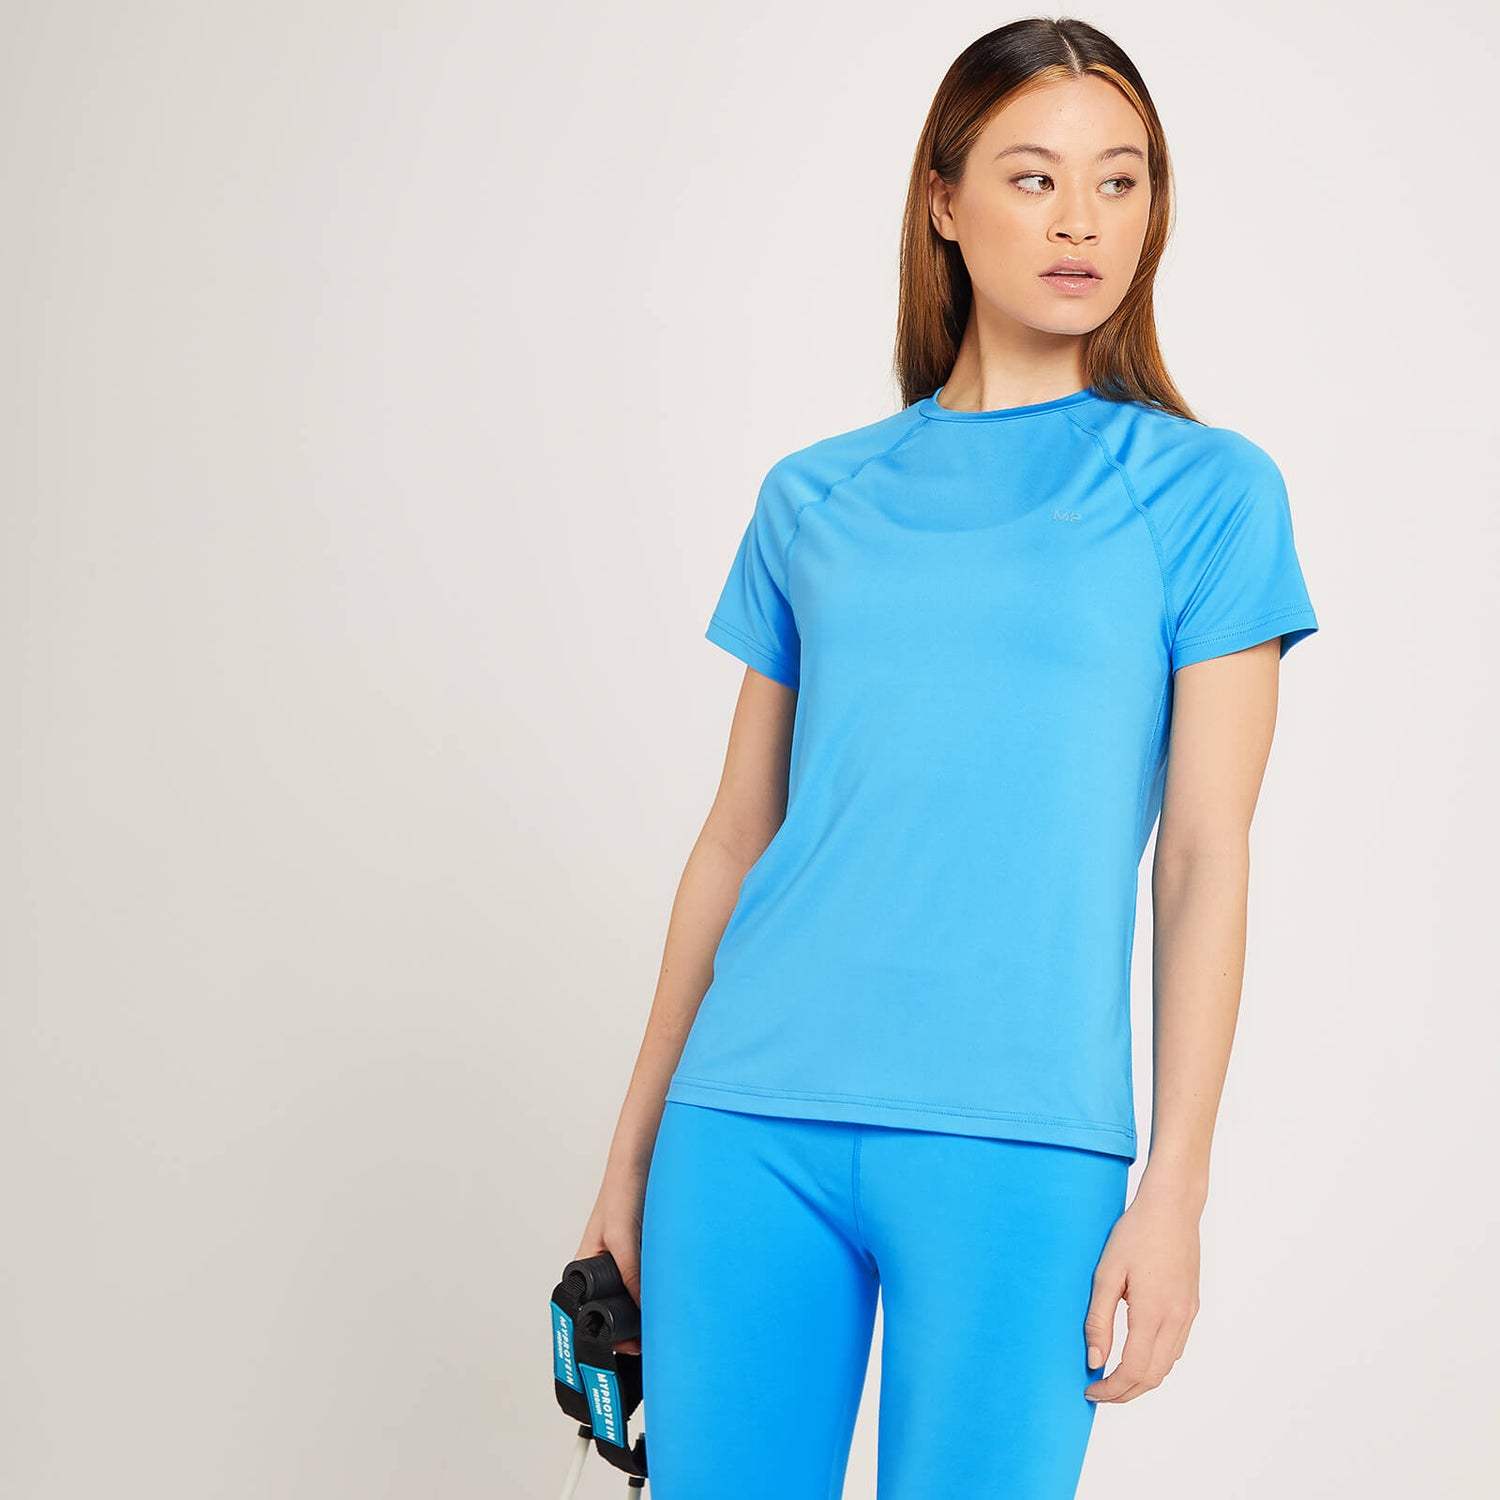 Γυναικείο Μπλουζάκι Προπόνησης MP Linear Mark - Φωτεινό μπλε - XS